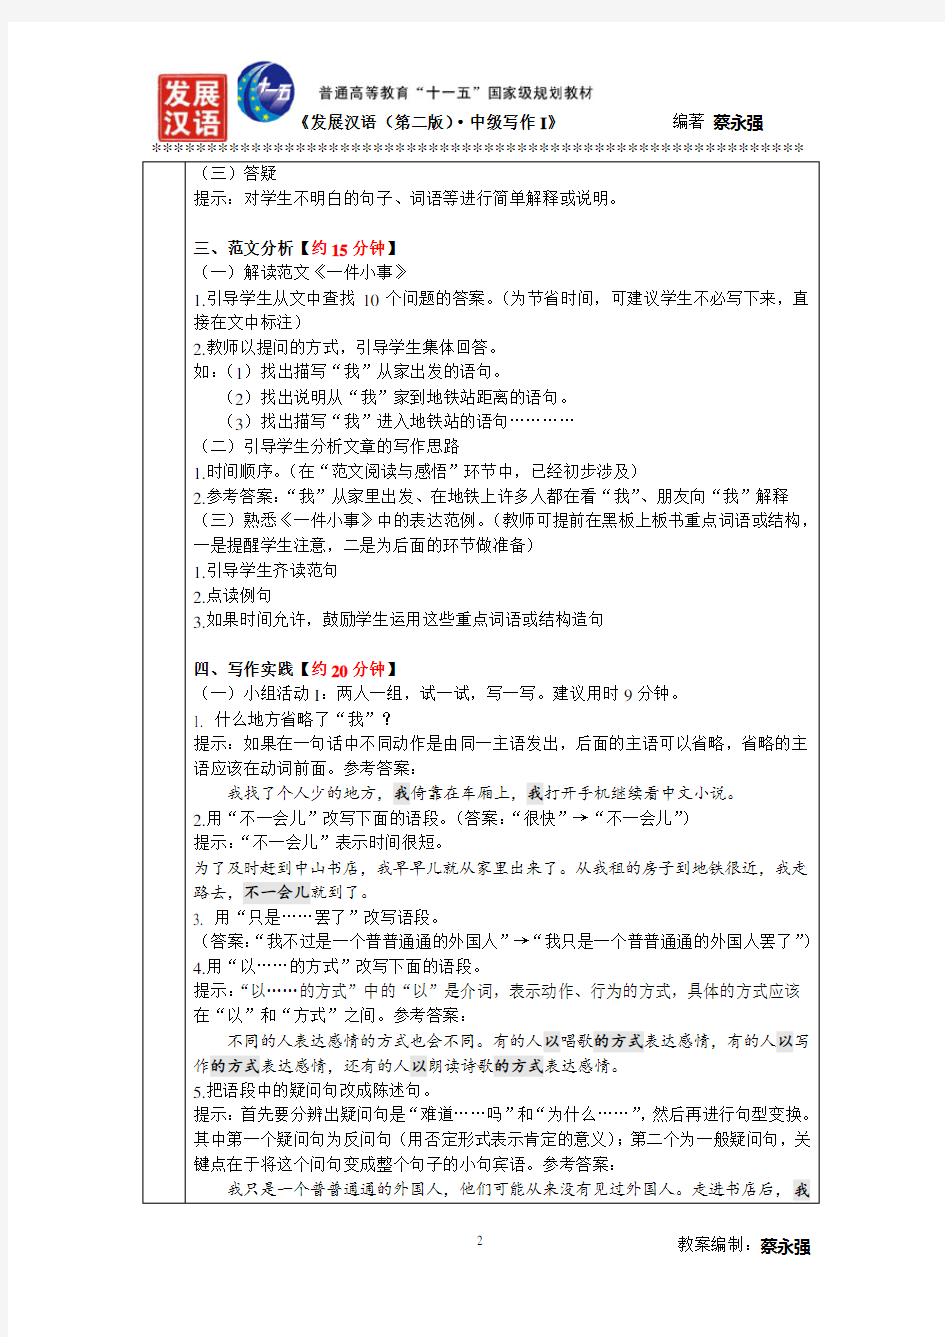 发展汉语(第二版)中级写作Ⅰ-第14课